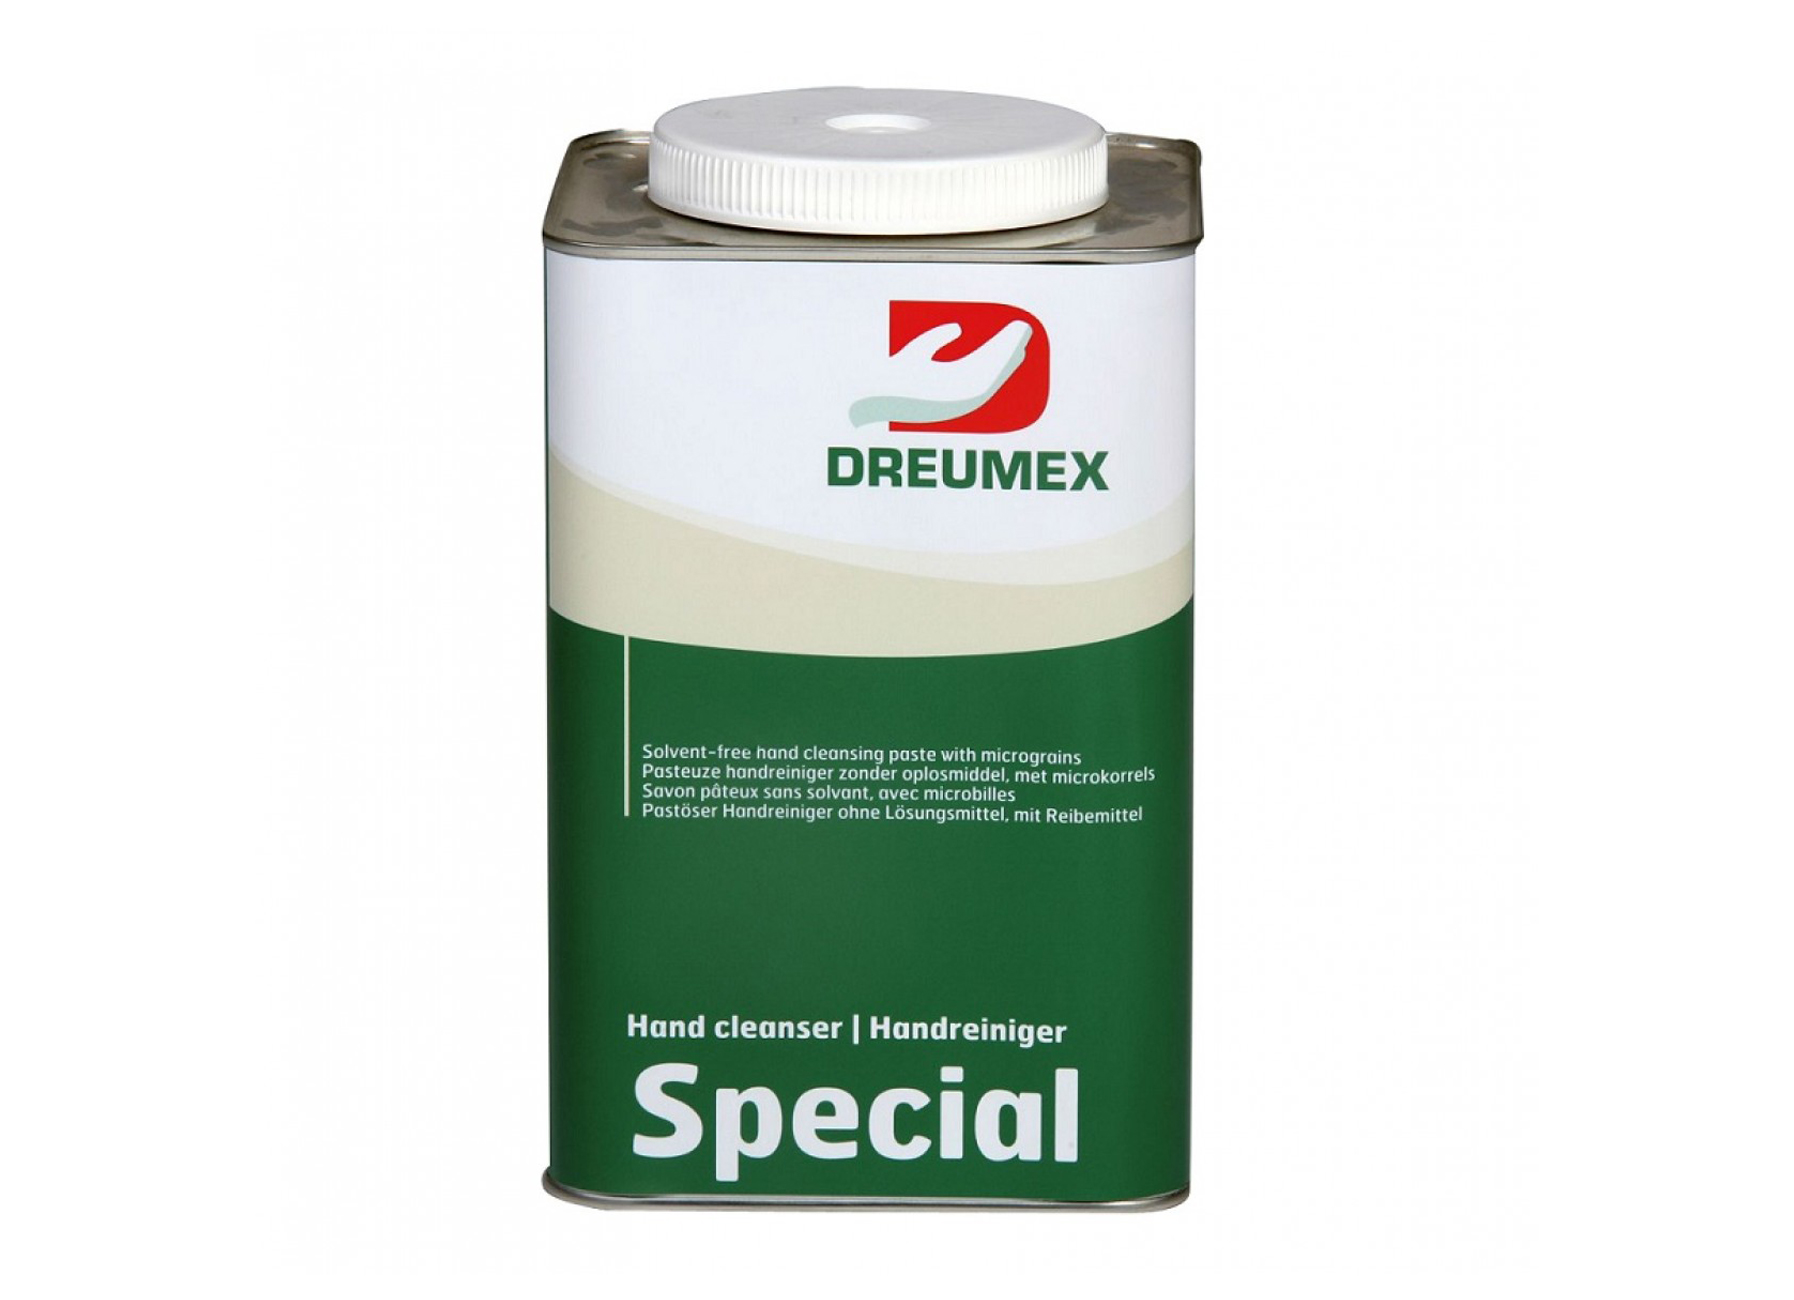 DREUMEX SPECIAL NETTOYAGE MAINS 4,2KG